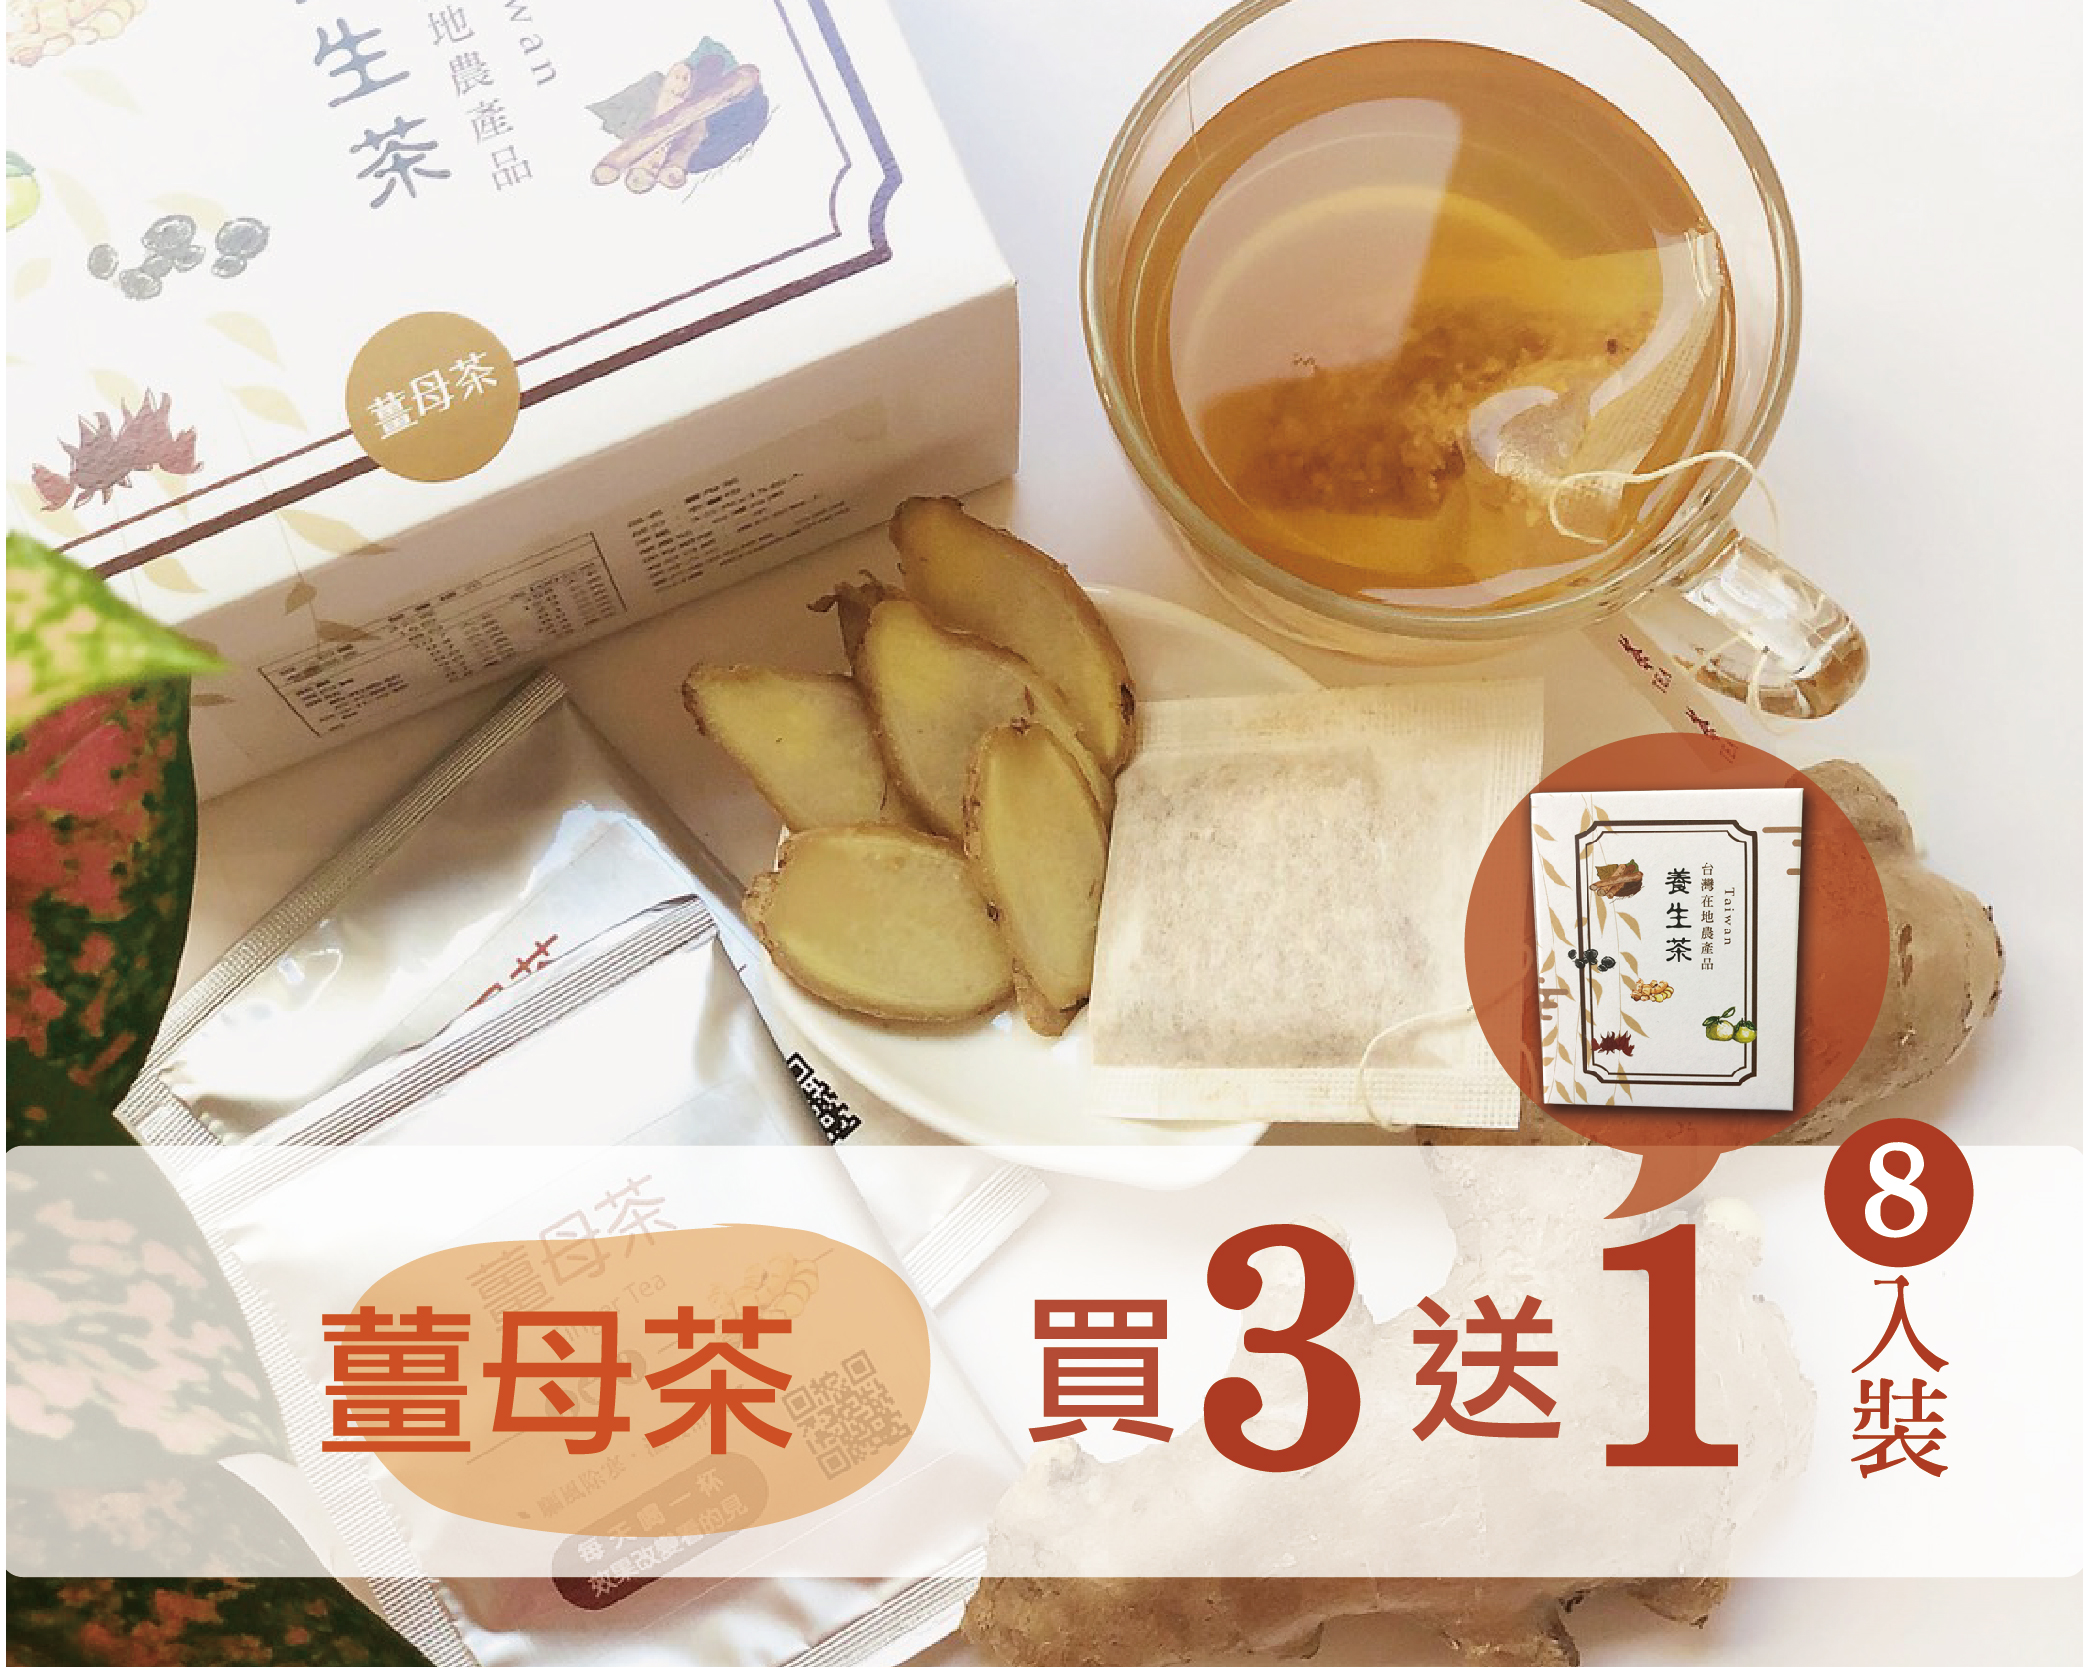 薑母茶 買三送一小盒(8入裝) 溫暖舒暢 女性每月調理好飲